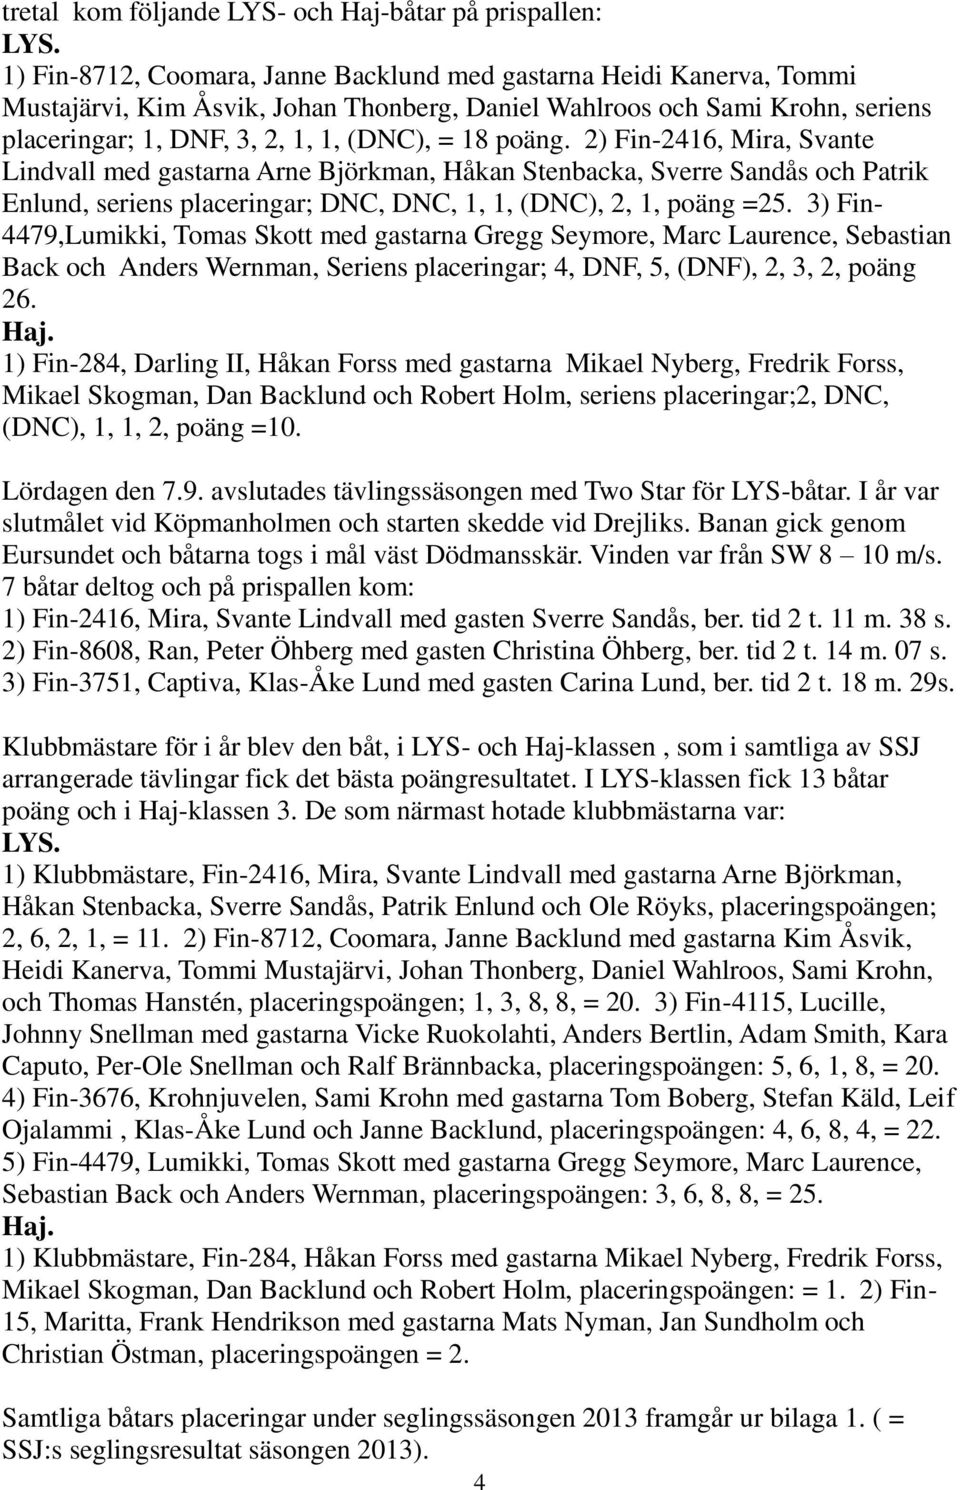 2) Fin-2416, Mira, Svante Lindvall med gastarna Arne Björkman, Håkan Stenbacka, Sverre Sandås och Patrik Enlund, seriens placeringar; DNC, DNC, 1, 1, (DNC), 2, 1, poäng =25.